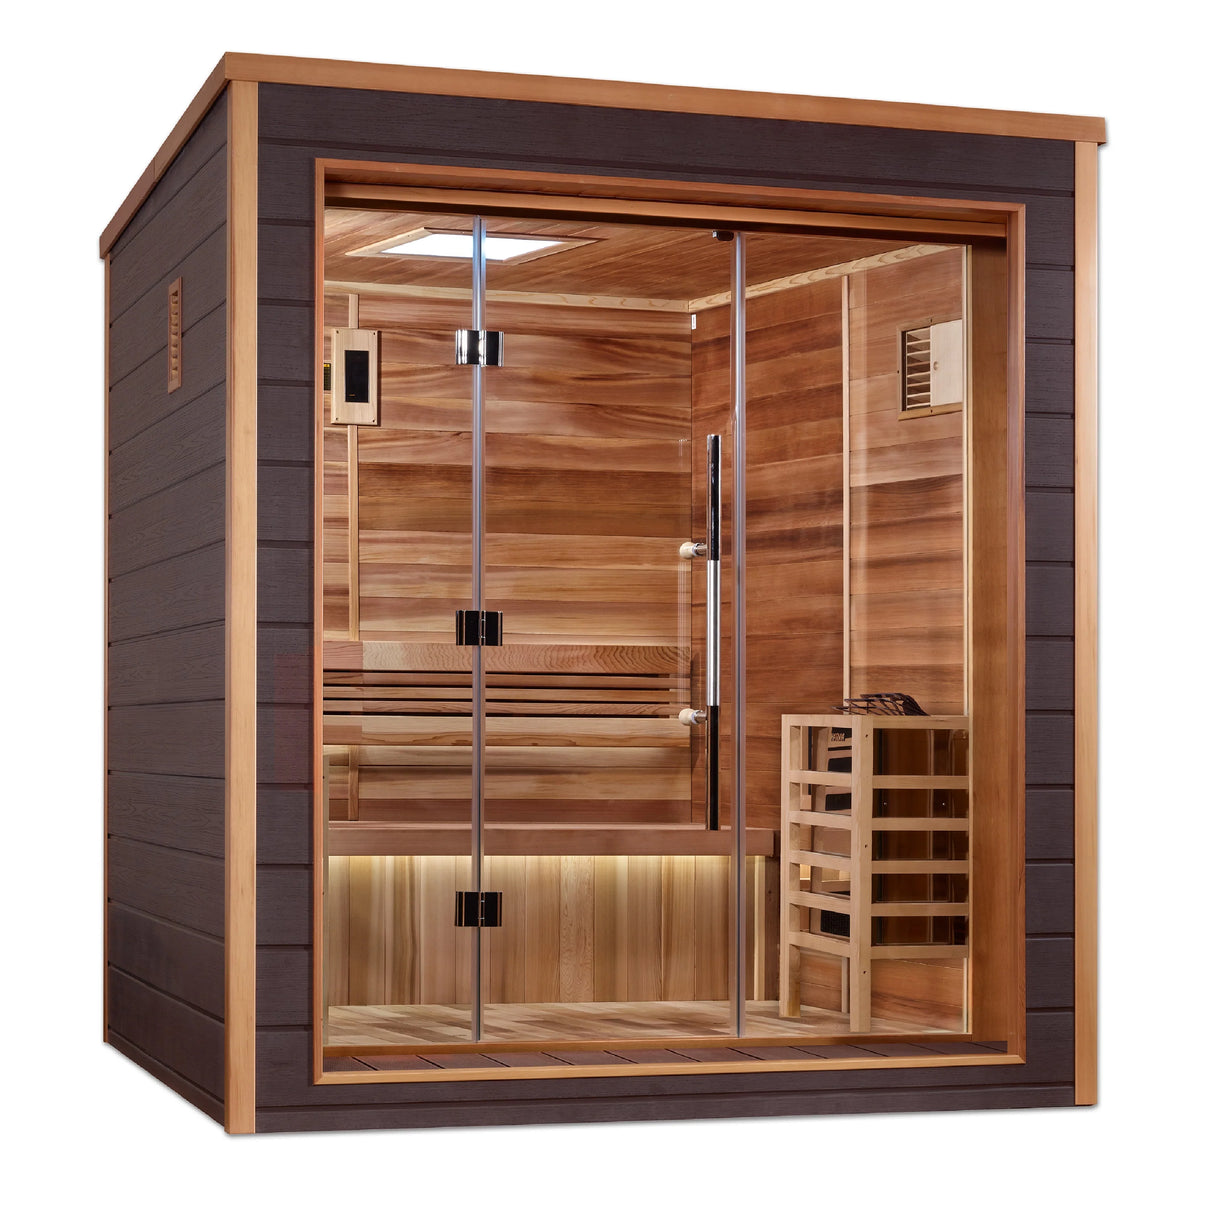 Golden Designs | Drammen 3-Person Outdoor-Indoor Traditional Steam Sauna (GDI-8203-01) - Canadian Red Cedar Interior